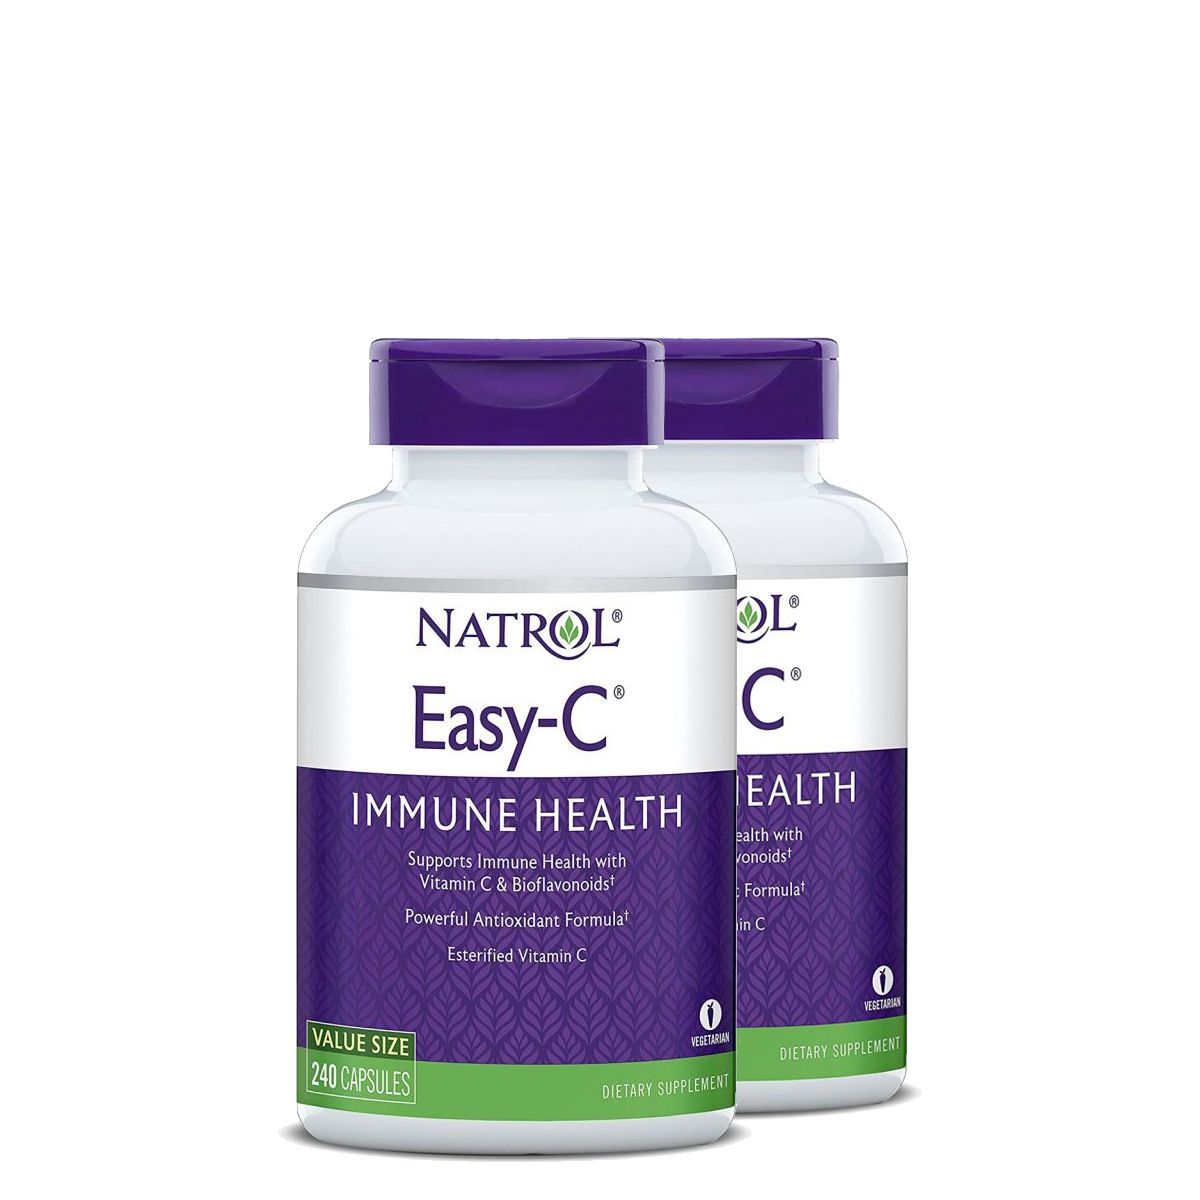 Észterifikált C-vitamin 500 mg, Natrol Easy-C, 2x240 kapszula